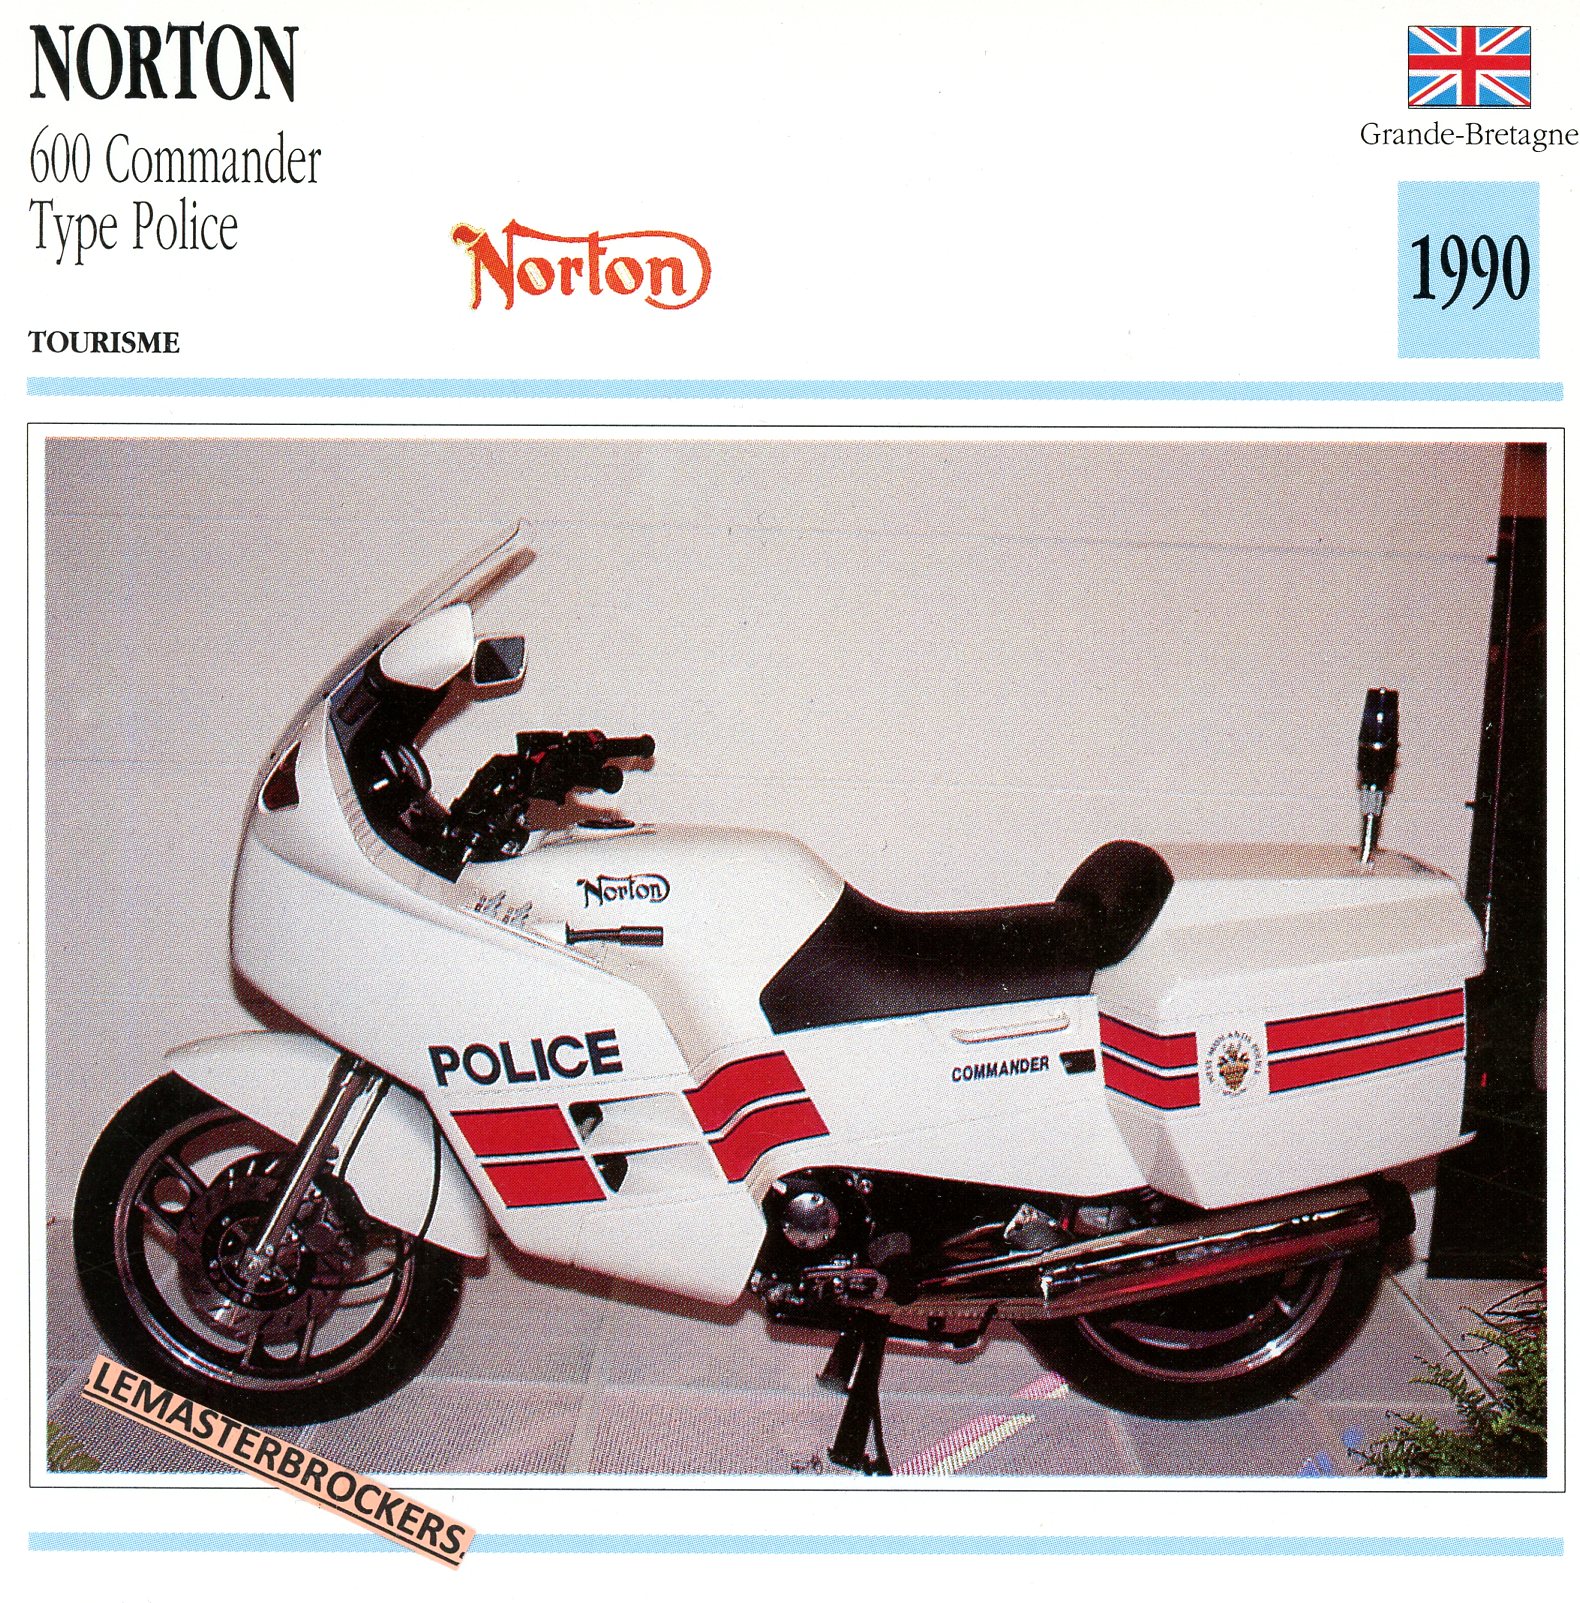 NORTON-600-COMMANDER-POLICE-FICHE-MOTO-ATLAS-lemasterbrockers-CARD-MOTORCYCLE